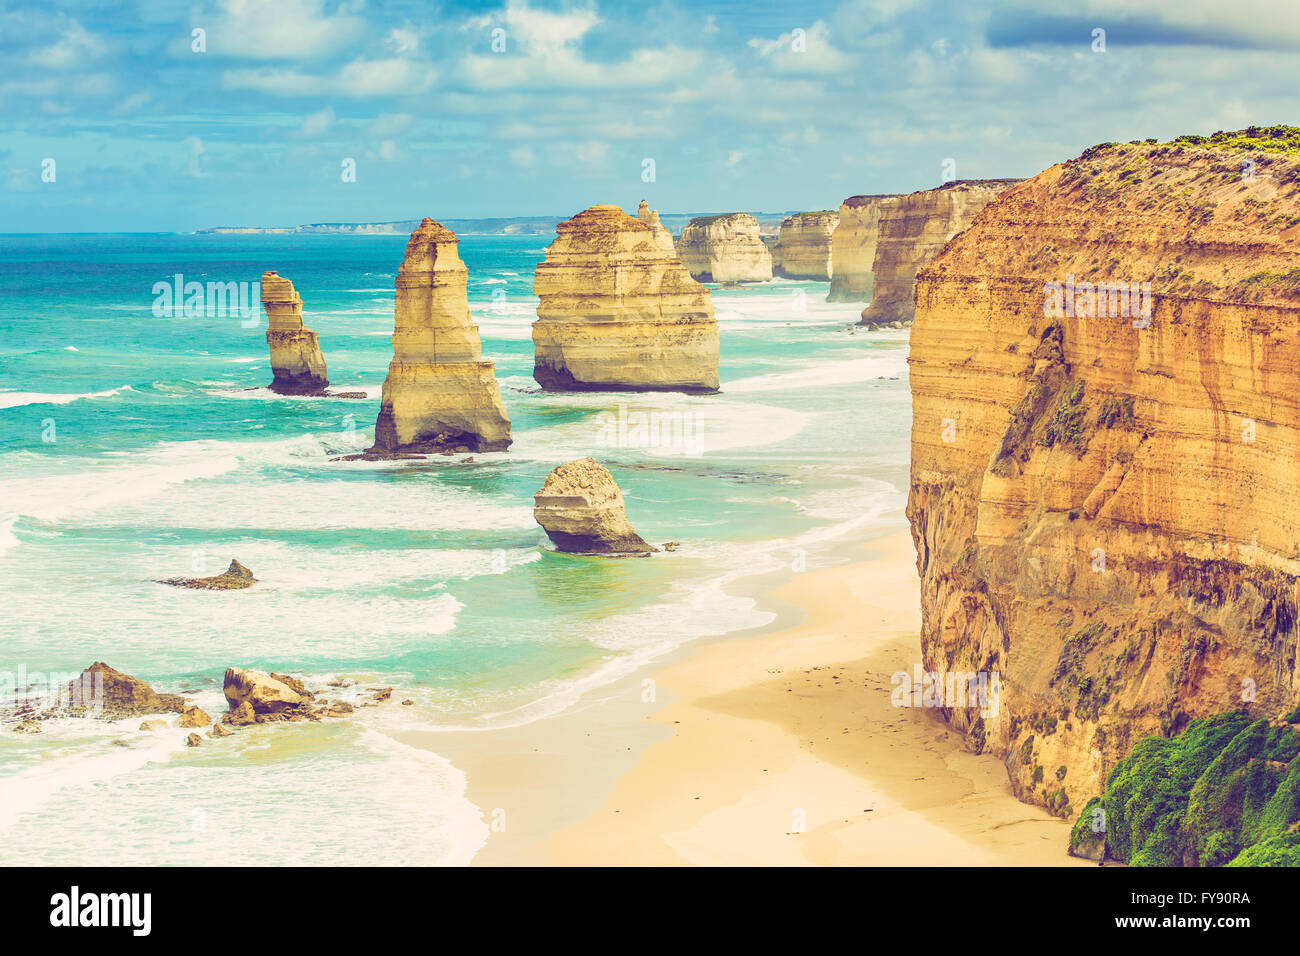 Dodici Apostoli formazioni rocciose, Great Ocean Road, Victoria, Australia. Immagine è retrò filtro applicato Foto Stock